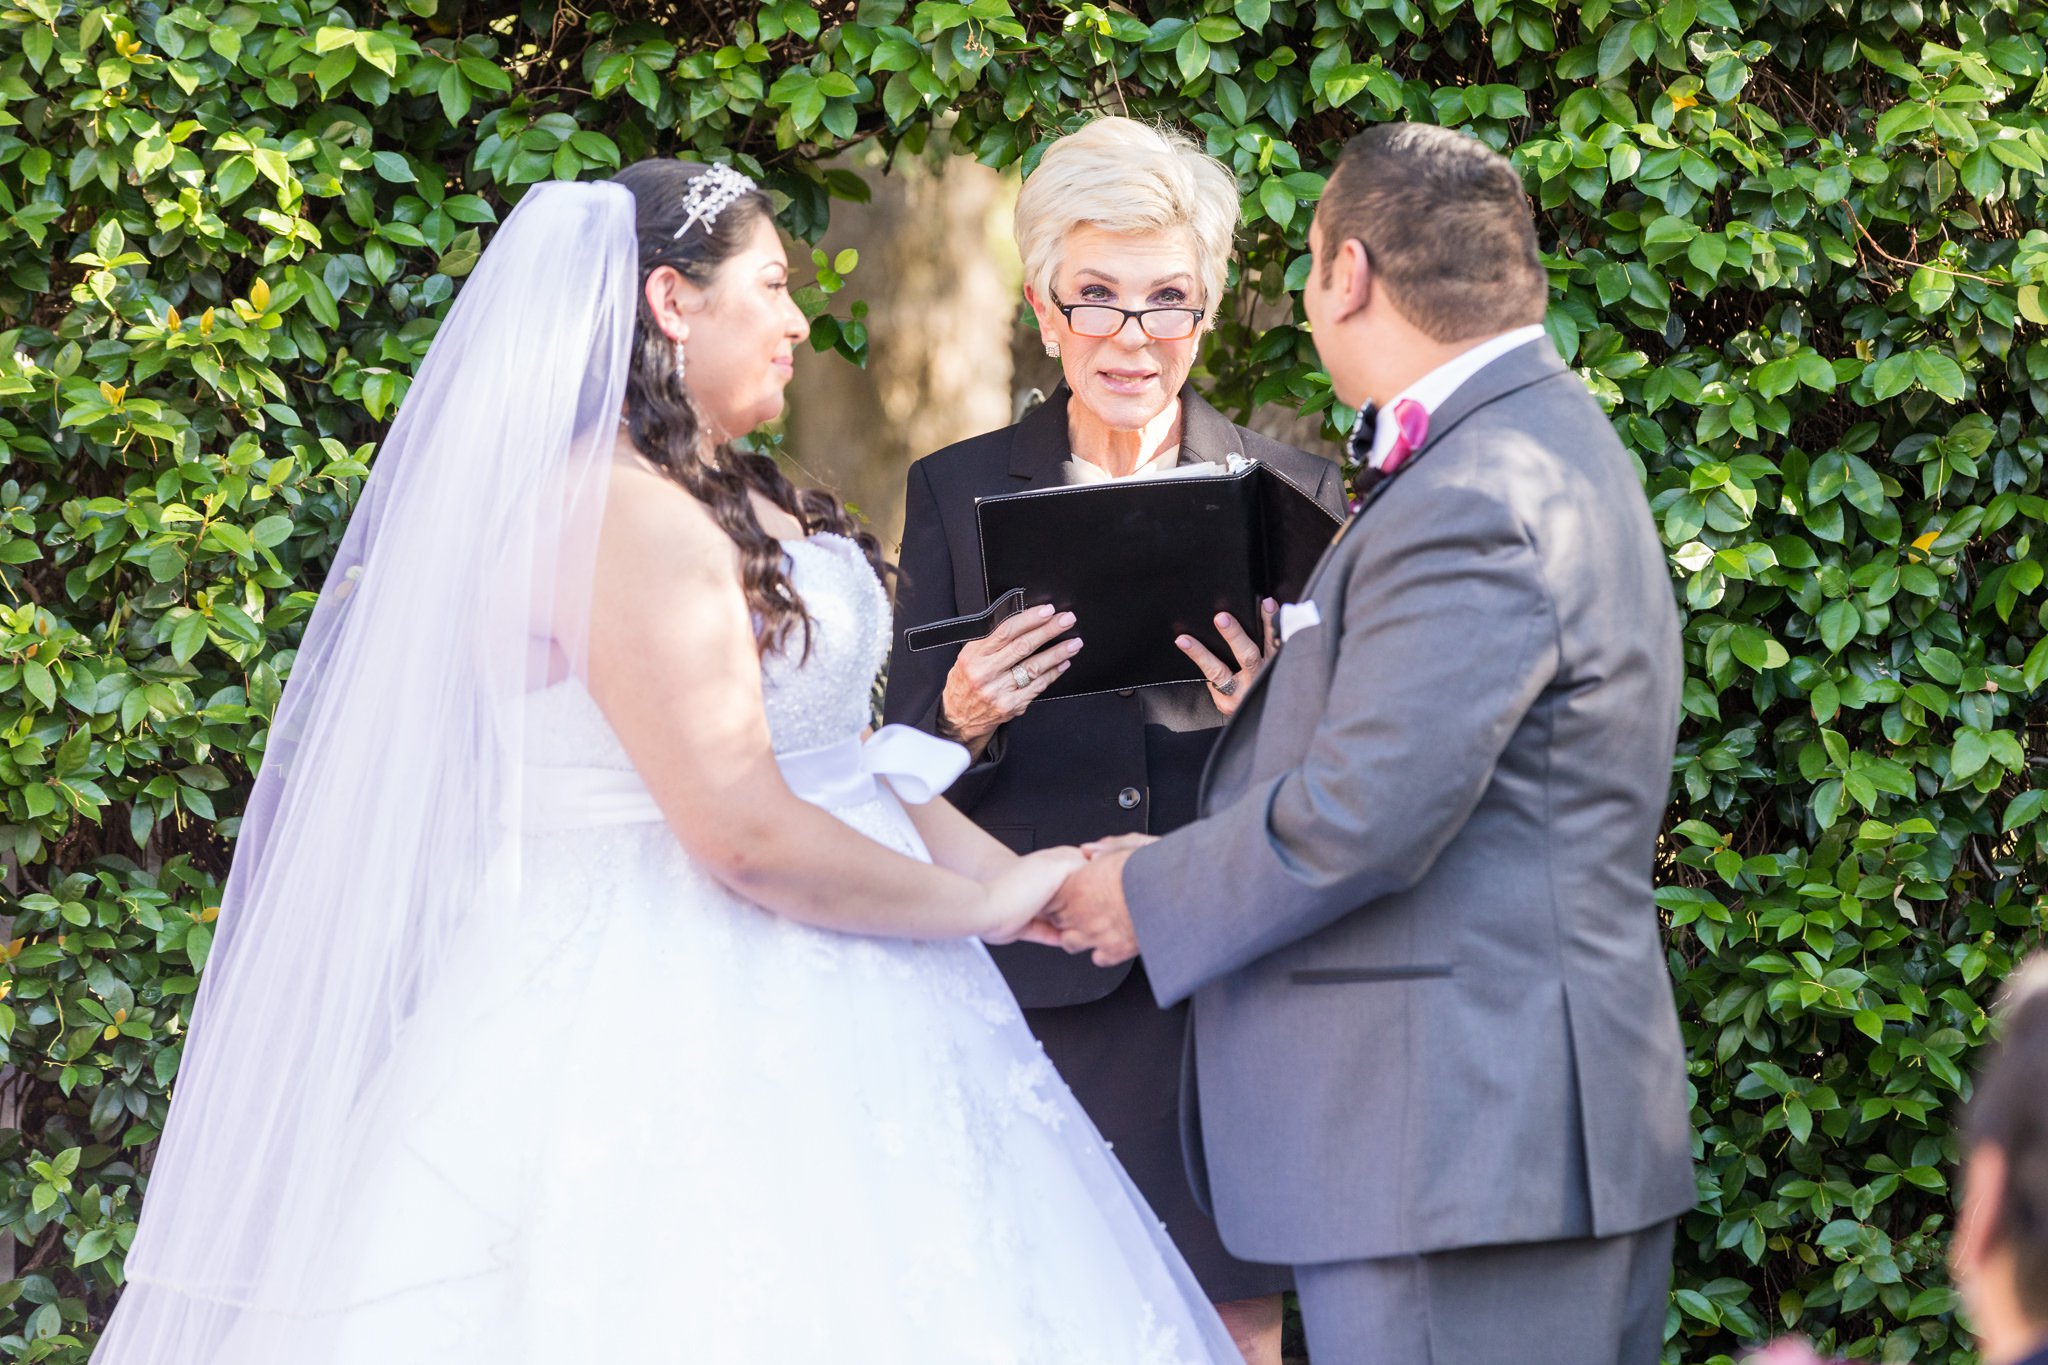 A Disney Inspired Wedding at Castle Avalon in New Braunfels, TX by Dawn Elizabeth Studios, San Antonio Wedding Photographer